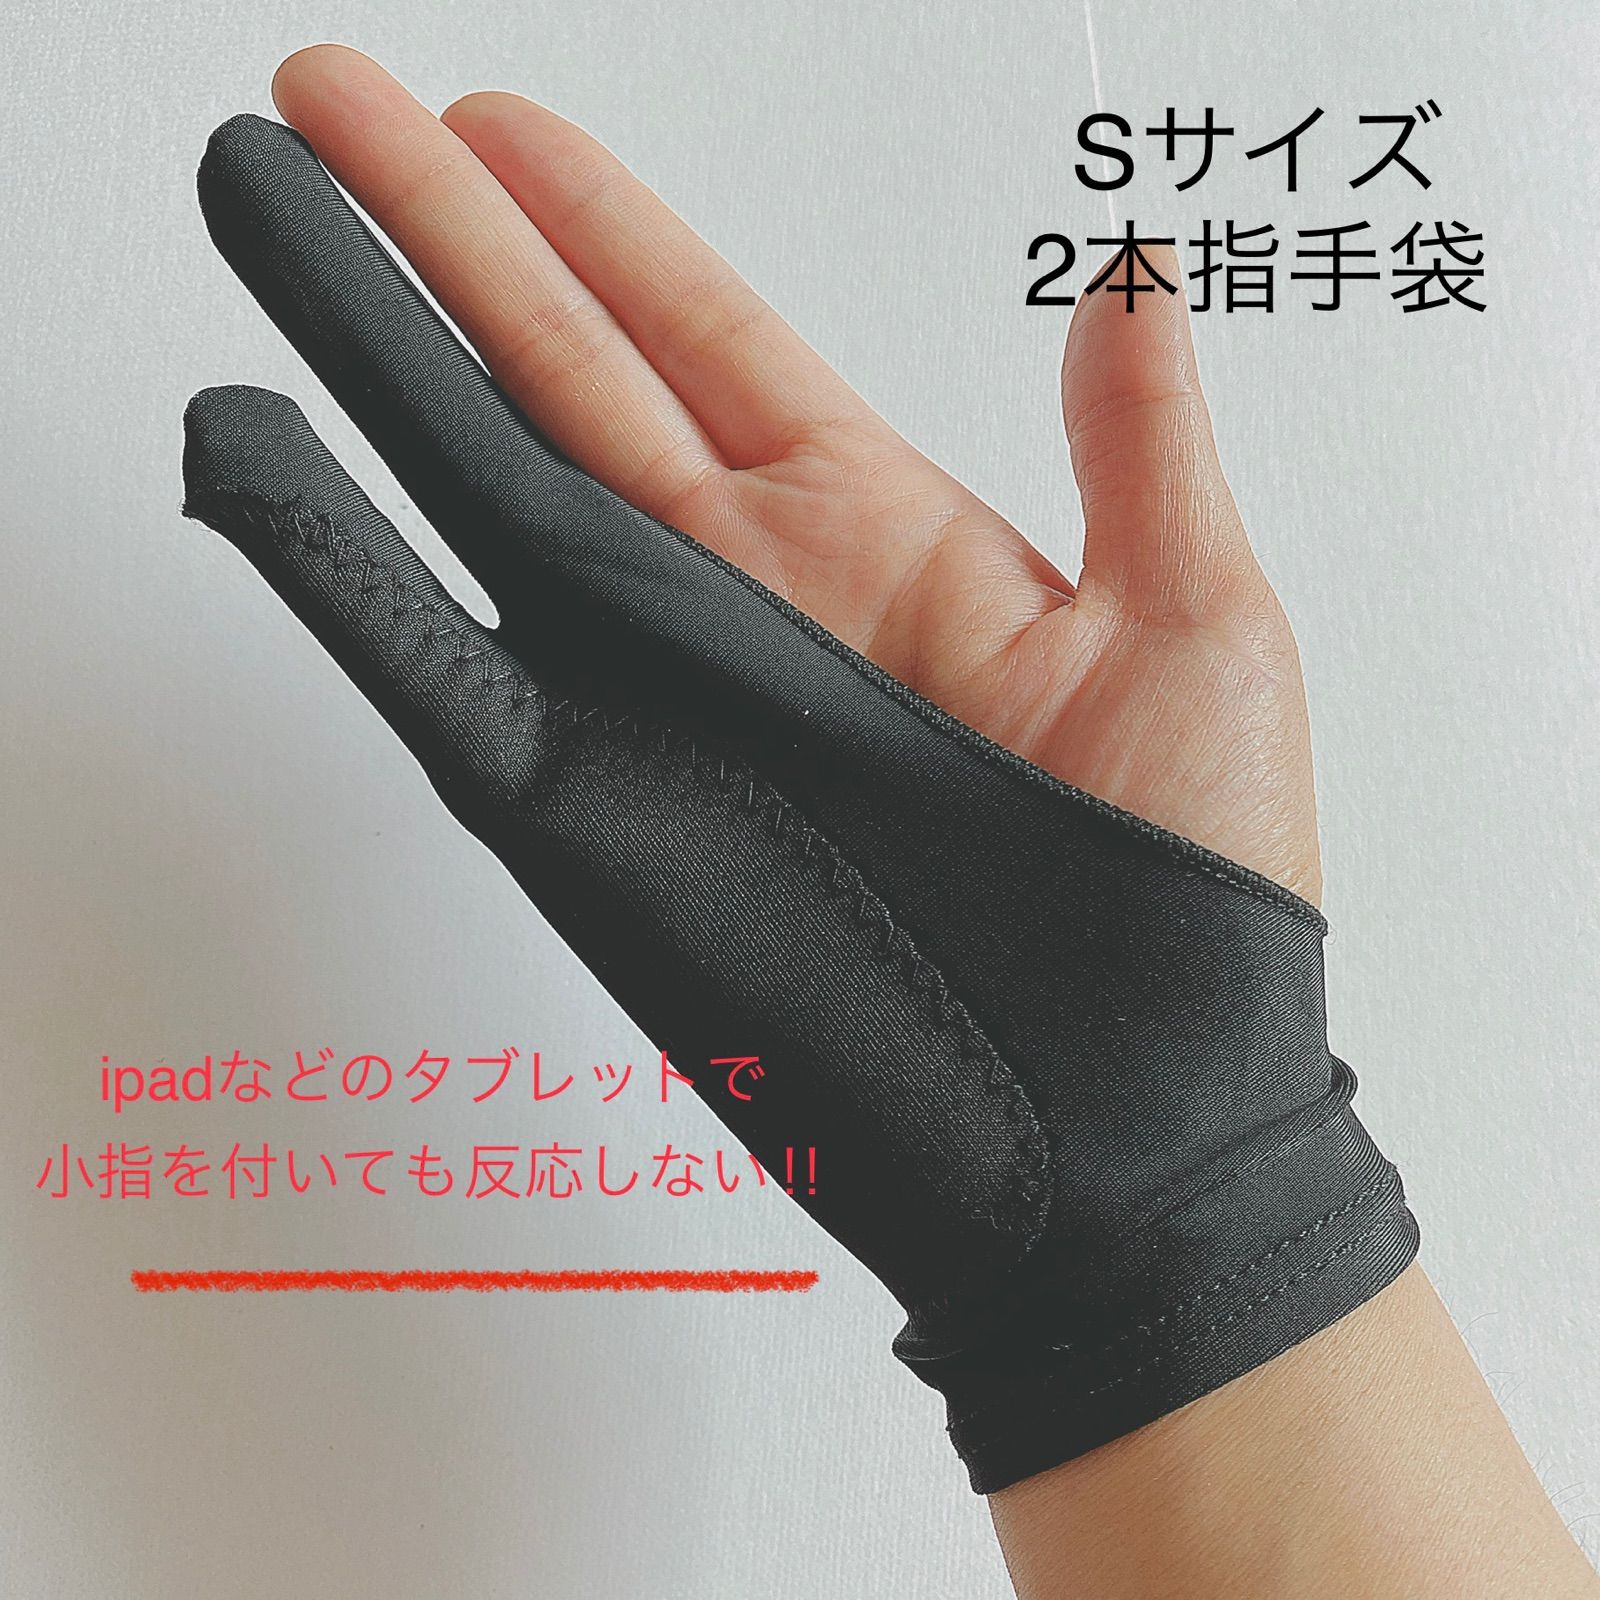 若者の大愛商品 デッサン用手袋 S 2本指 グローブ タブレット 誤動作防止 手袋 スケッチ